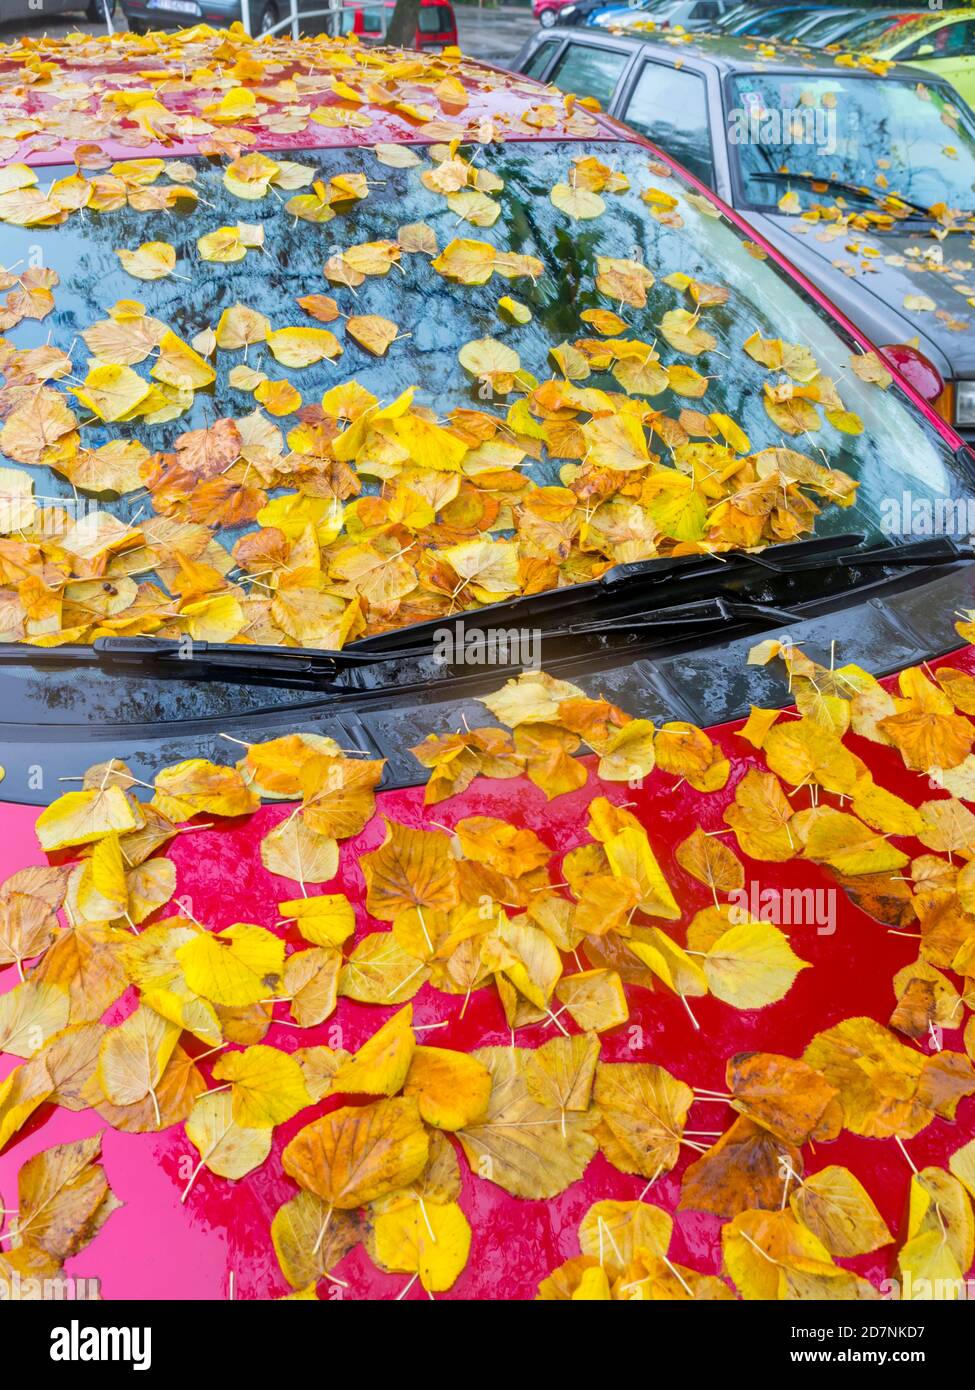 linden caída hojas en la cima Red vehículo estacionado Autumnal Otoño temporada delantera parabrisas corta vista recortada Foto de stock